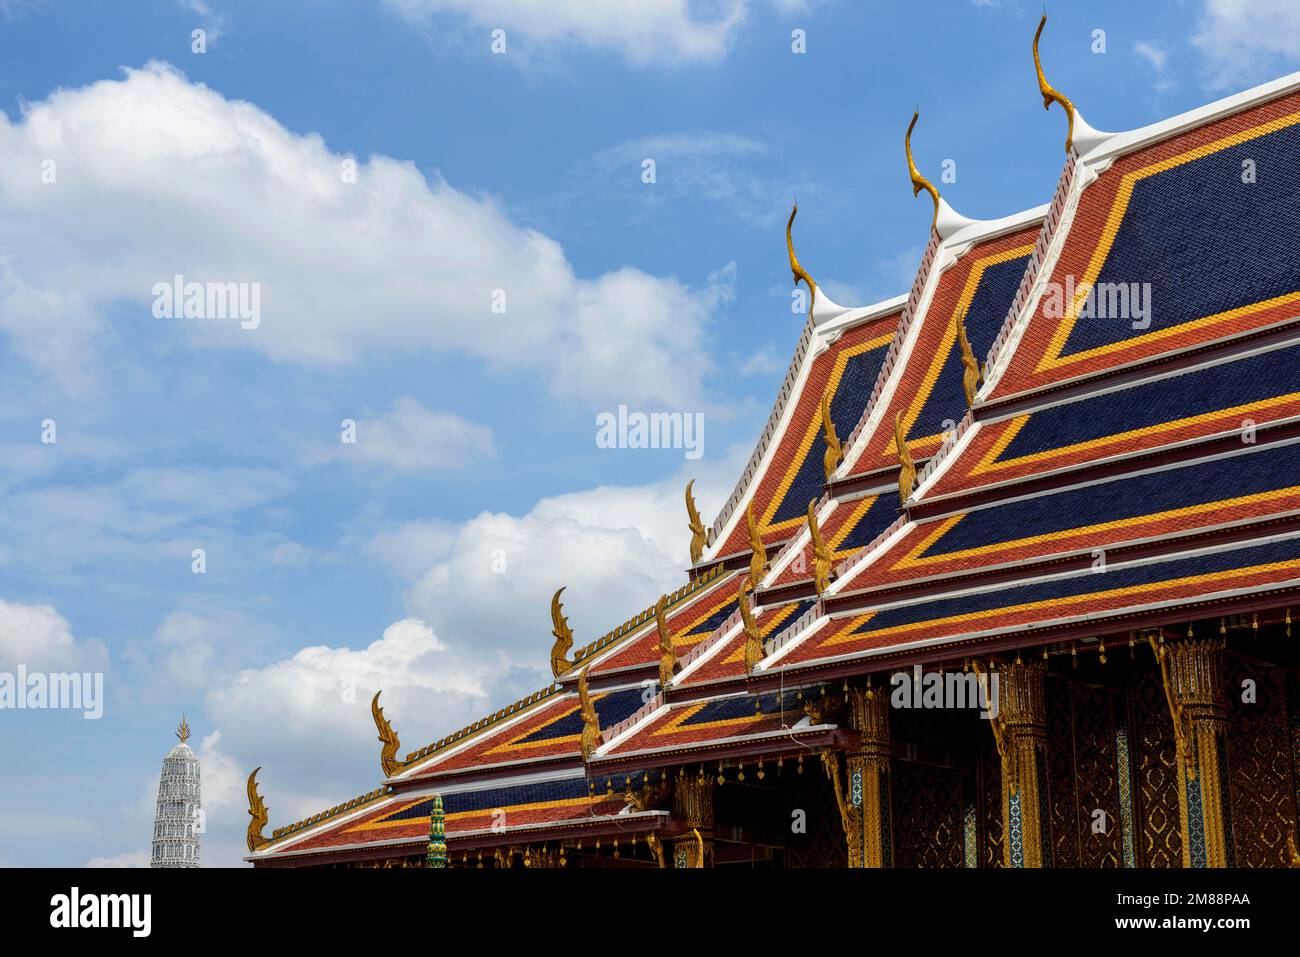 Tempel Wat Phra Kaeo, alter königlicher Palast, Tempel des Smaragd-Buddha, Bangkok, Thailand, Asien Stockfoto